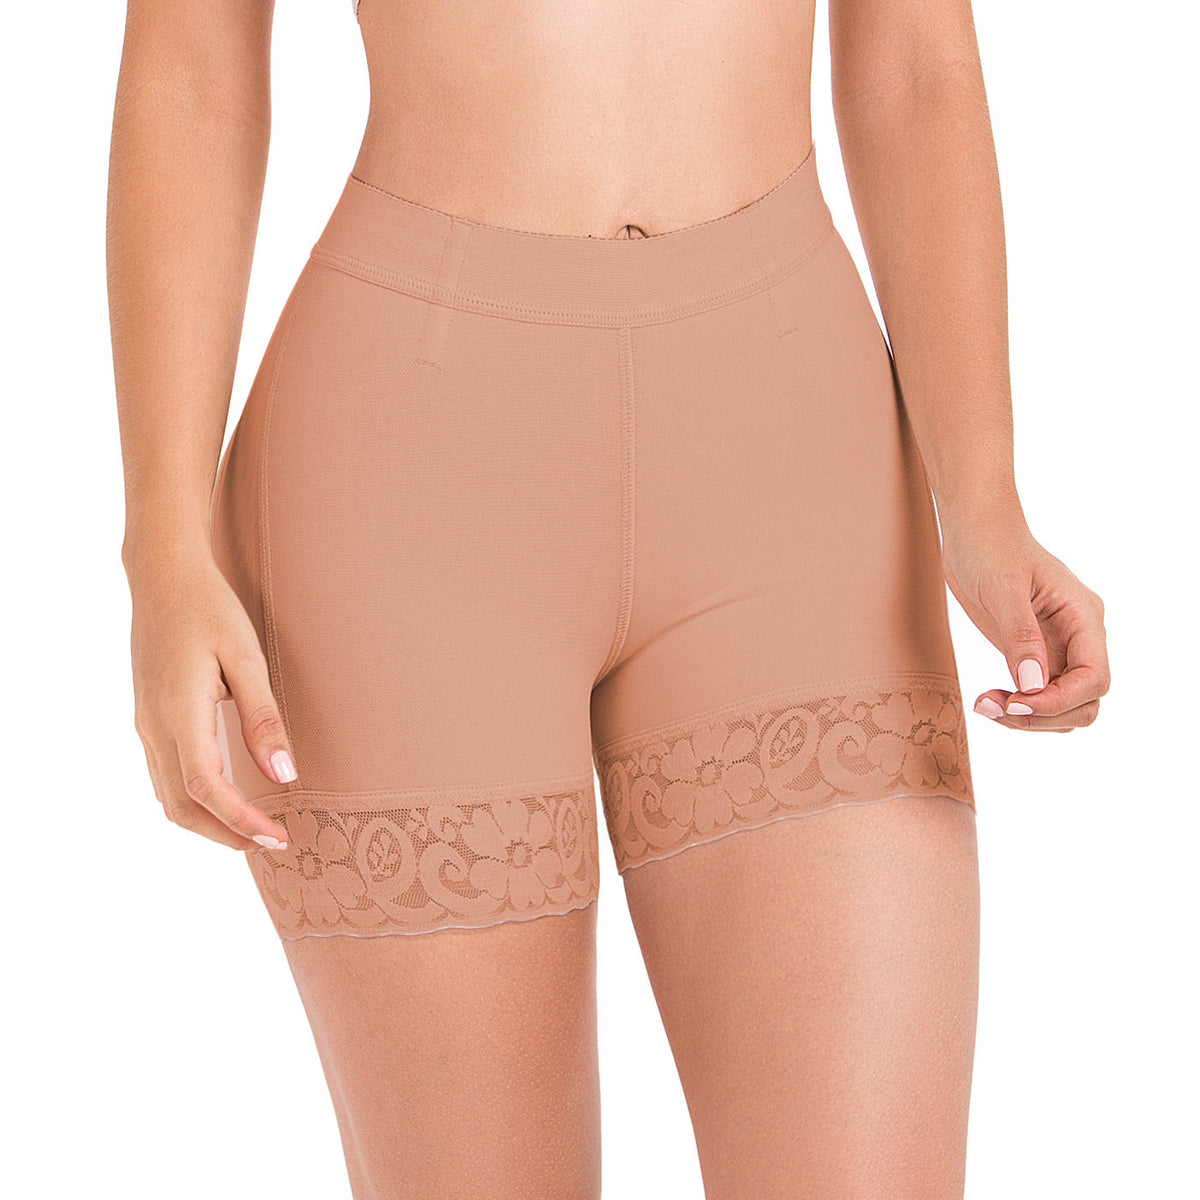 Fajas MariaE FU101 Pantalones cortos con cintura alta y control de barriga para mujer